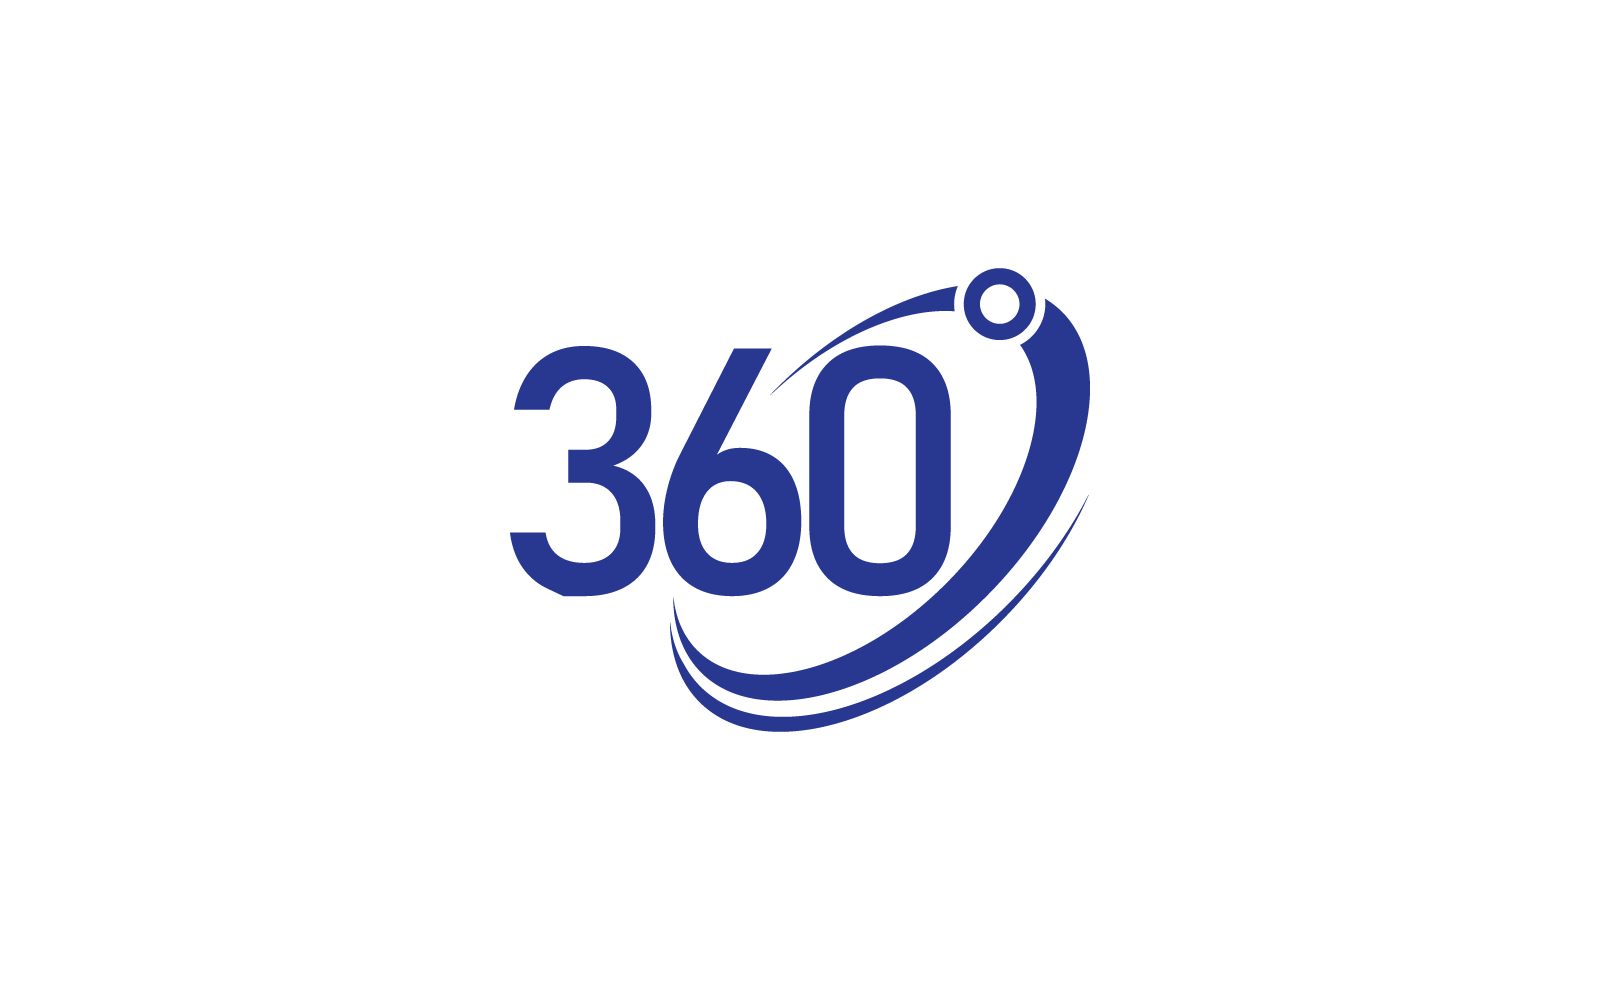 360 view logo icon vector flat design Logo Template